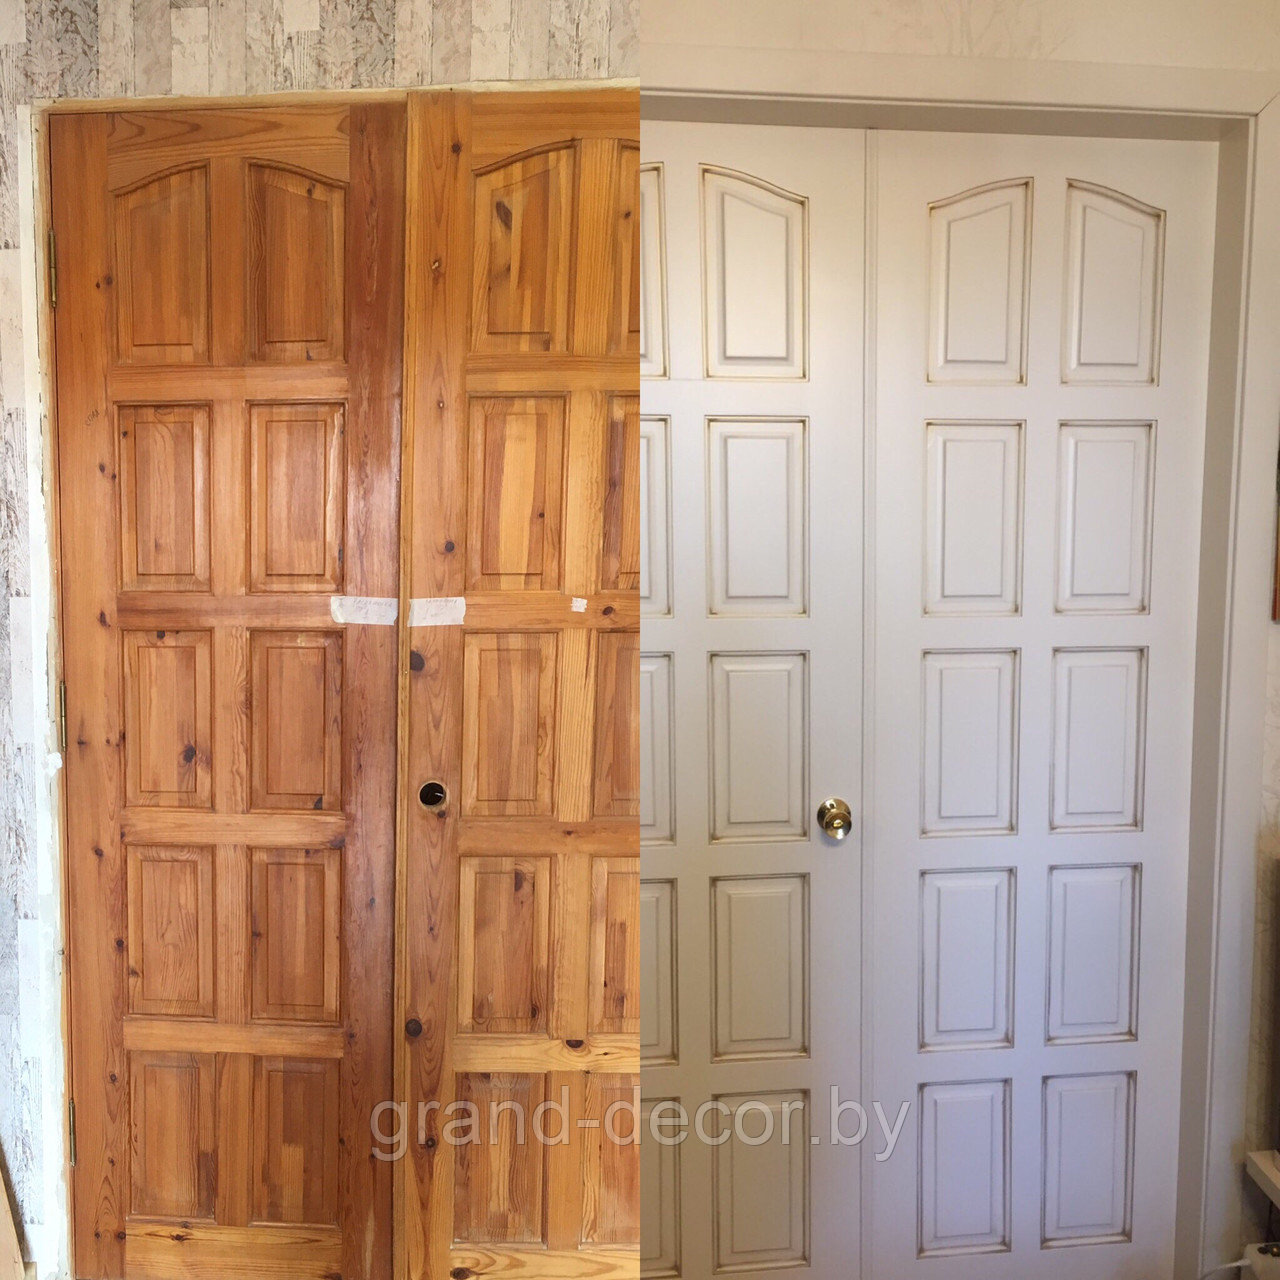 Реставрация деревянных межкомнатных дверей